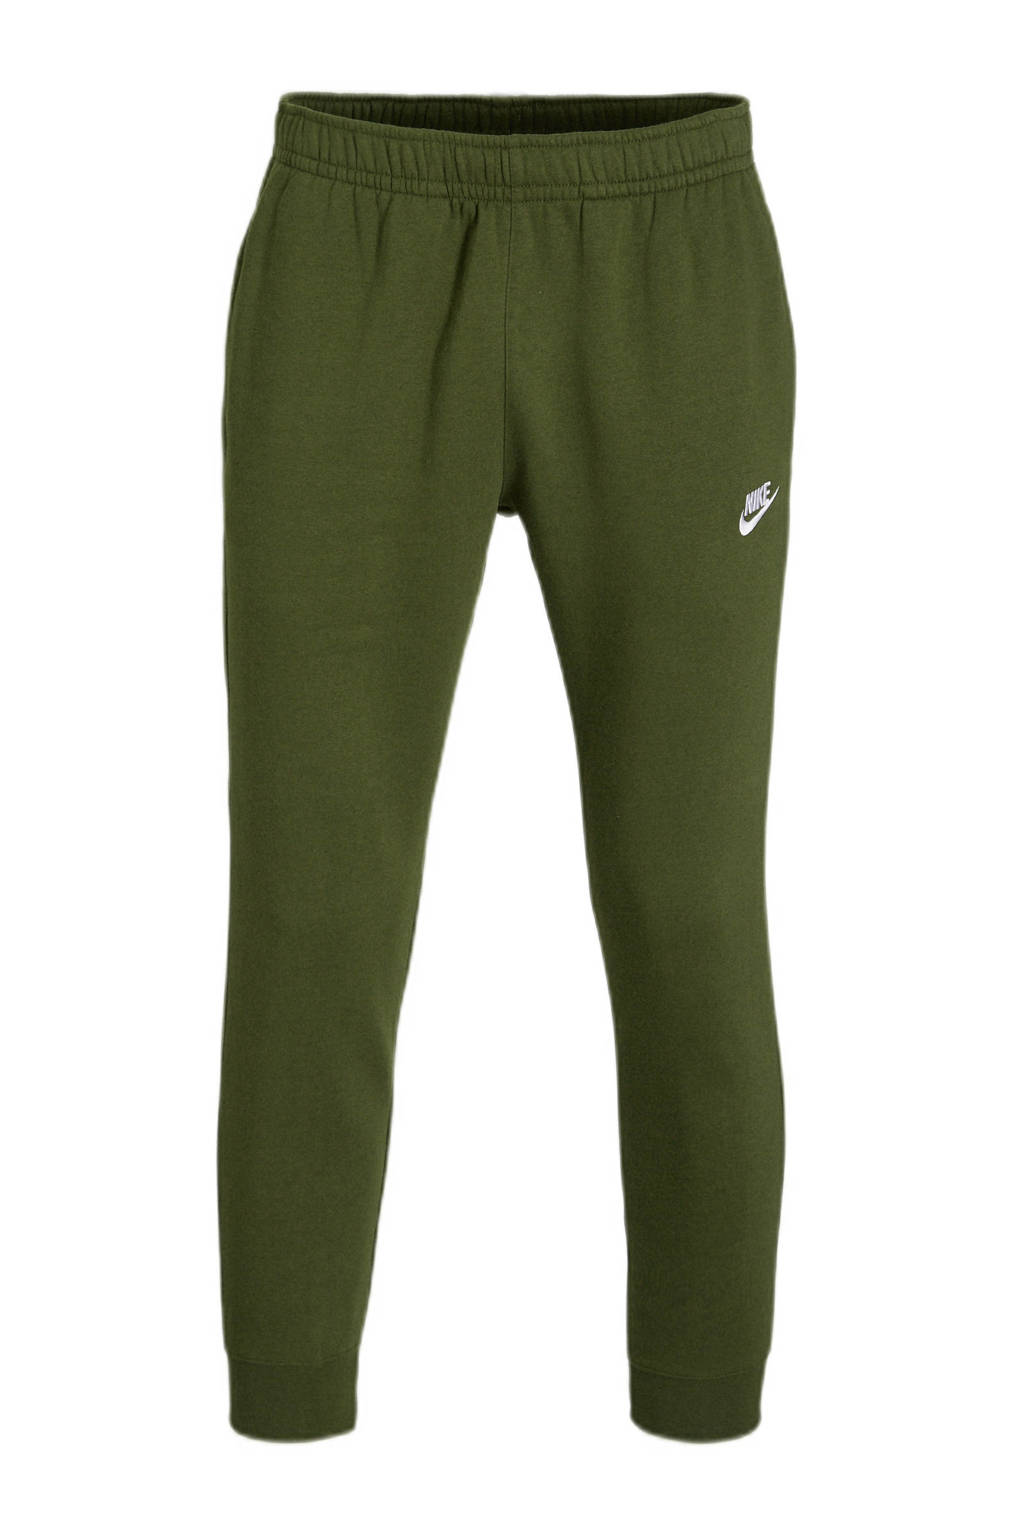 Groene heren Nike tapered fit joggingbroek van katoen met elastische tailleband met koord